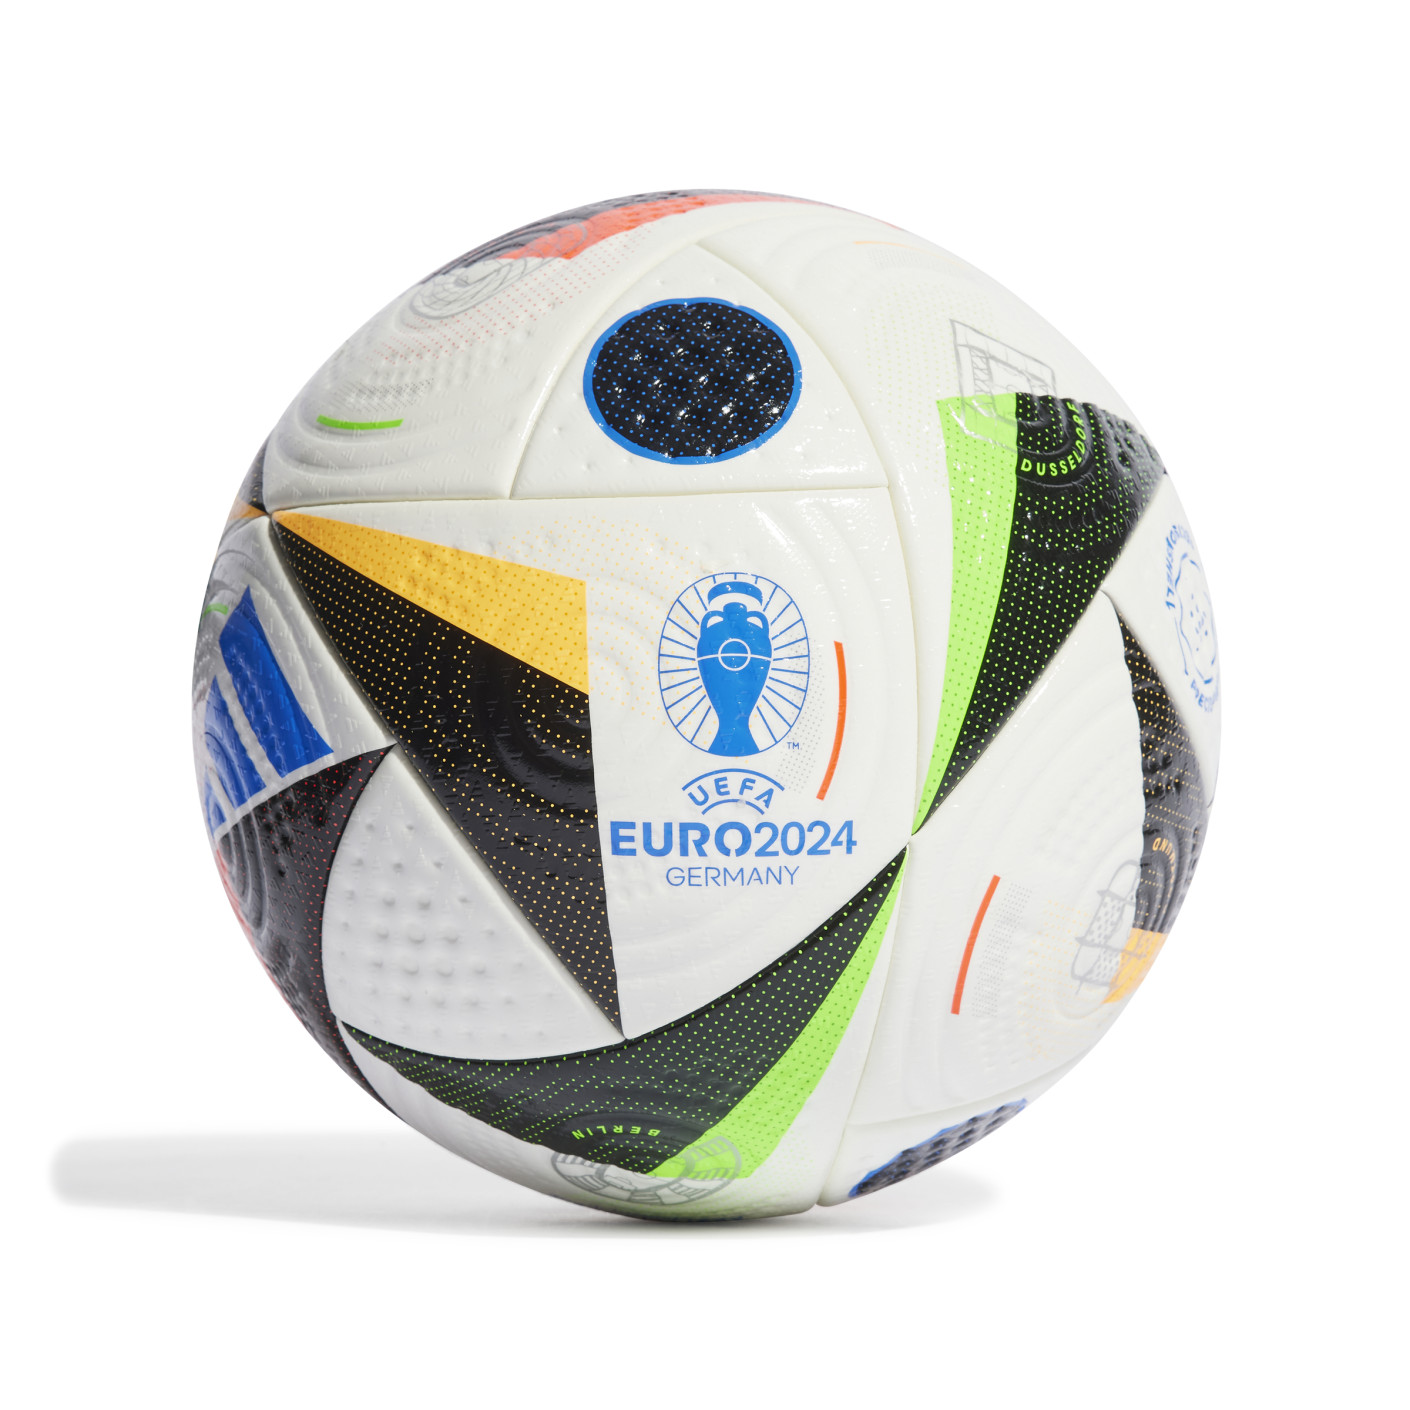 Les ballons officiels de l'Euro de football